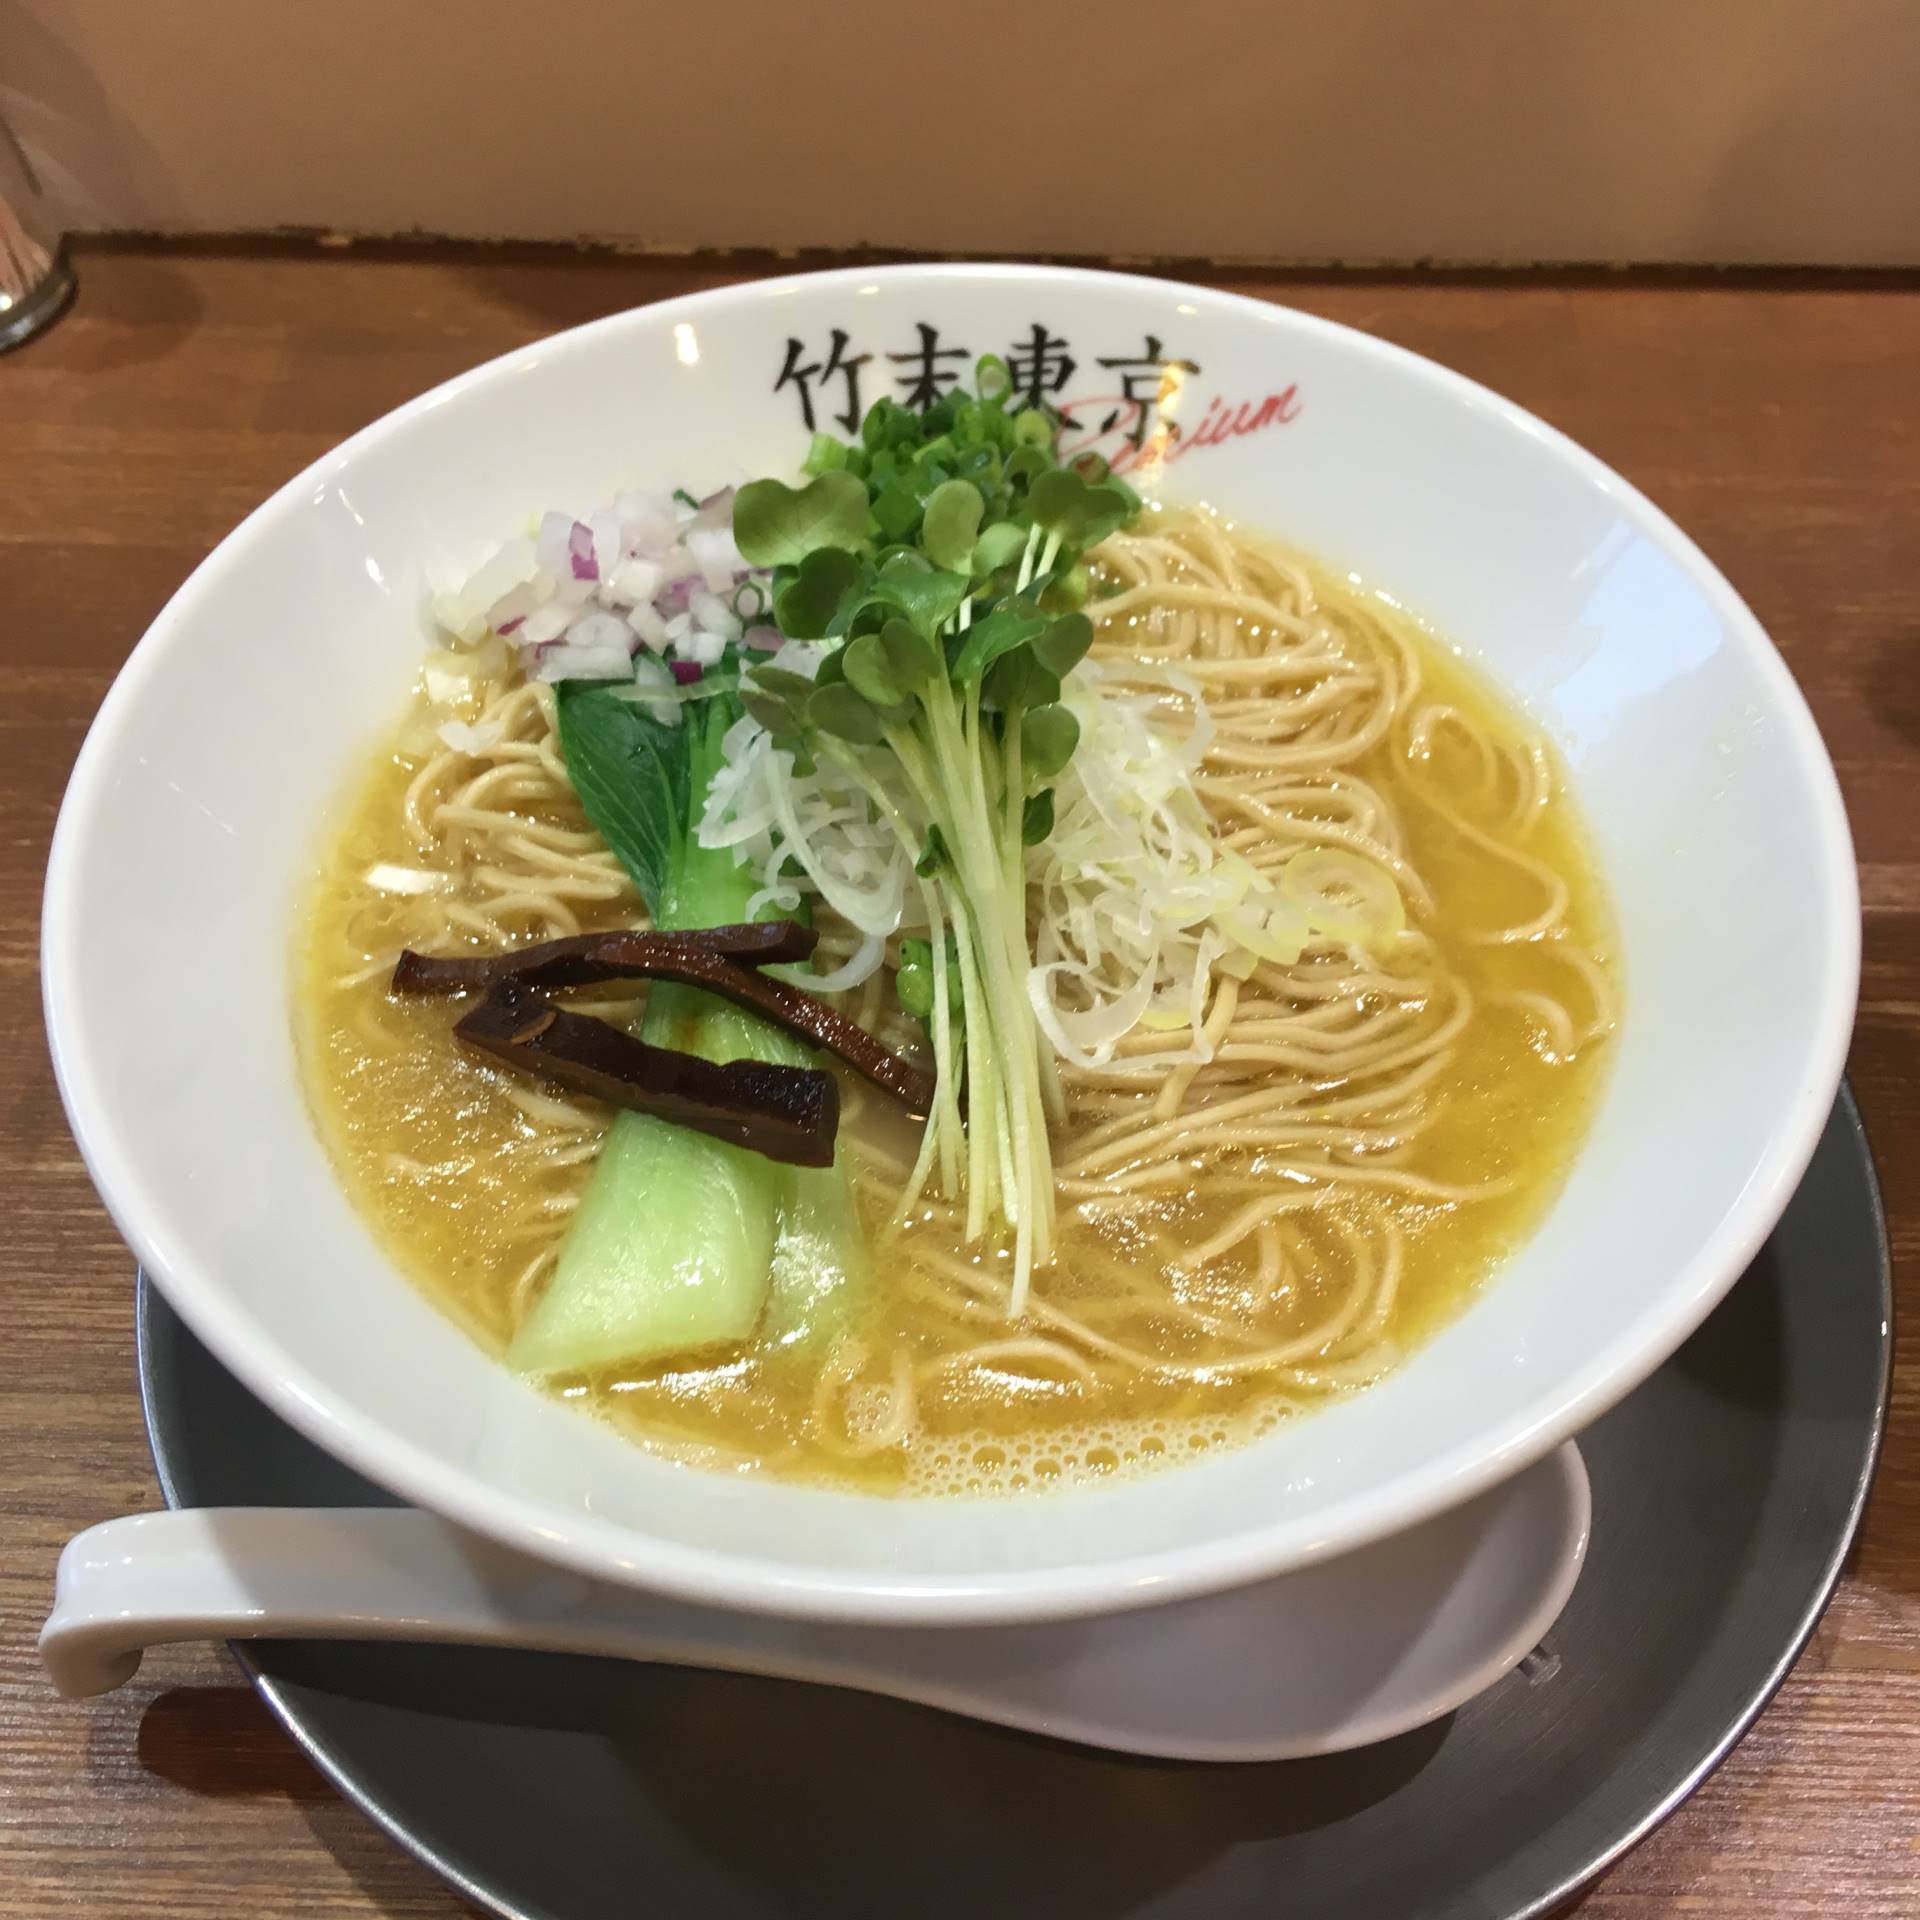 雉白湯のラーメン 竹末東京プレミアム4周年記念の限定麺